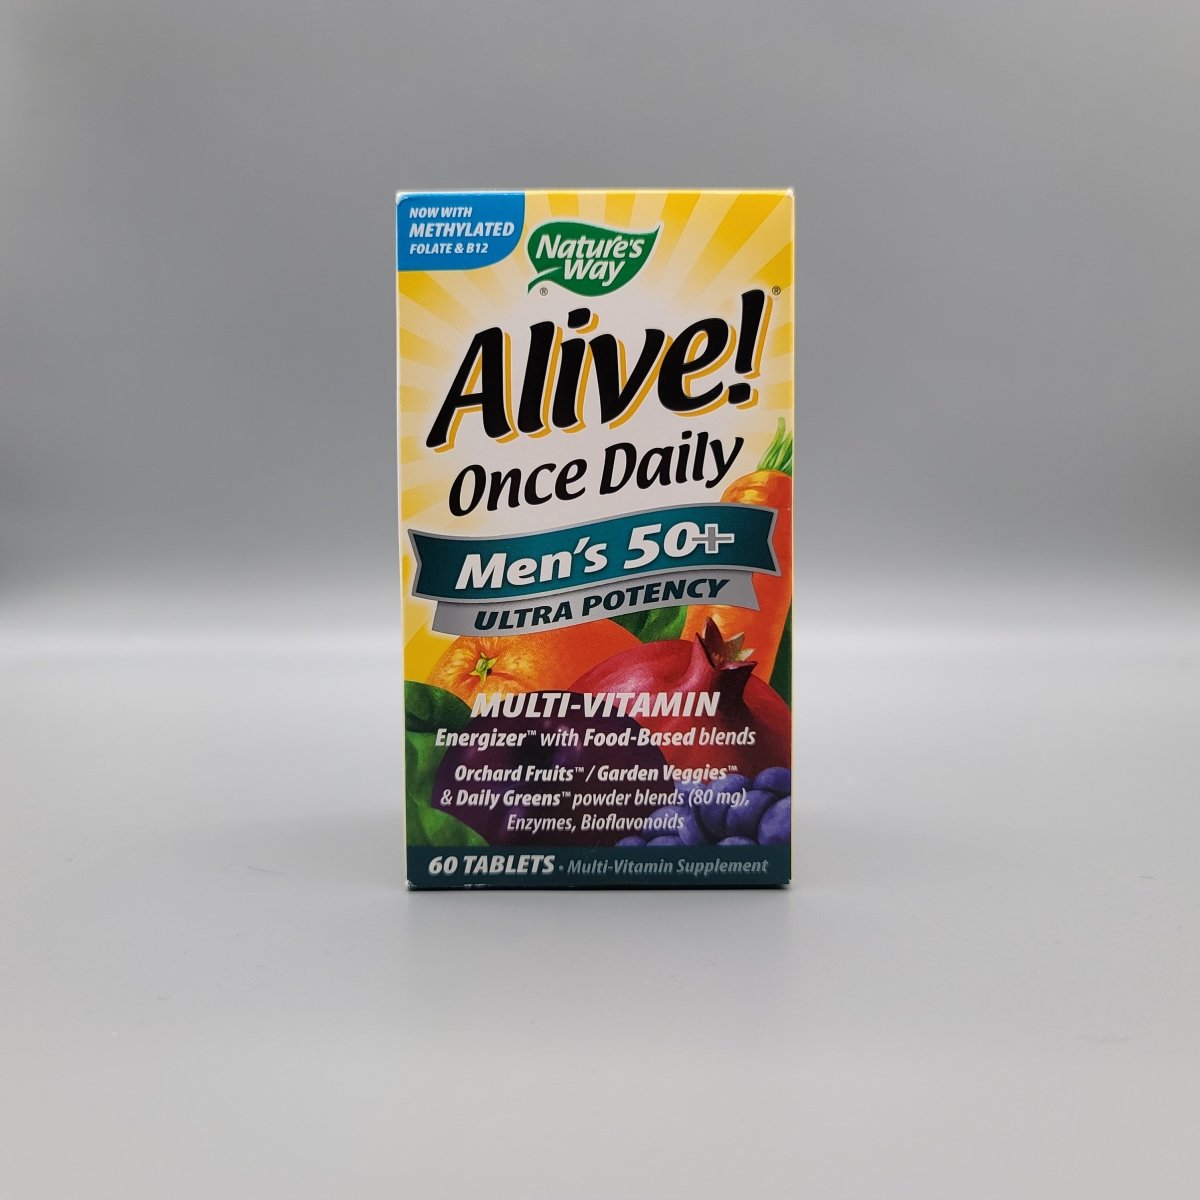 Alive! - Once Dialy - Men's 50+ - Ultra Potency - Multi-Vitamin